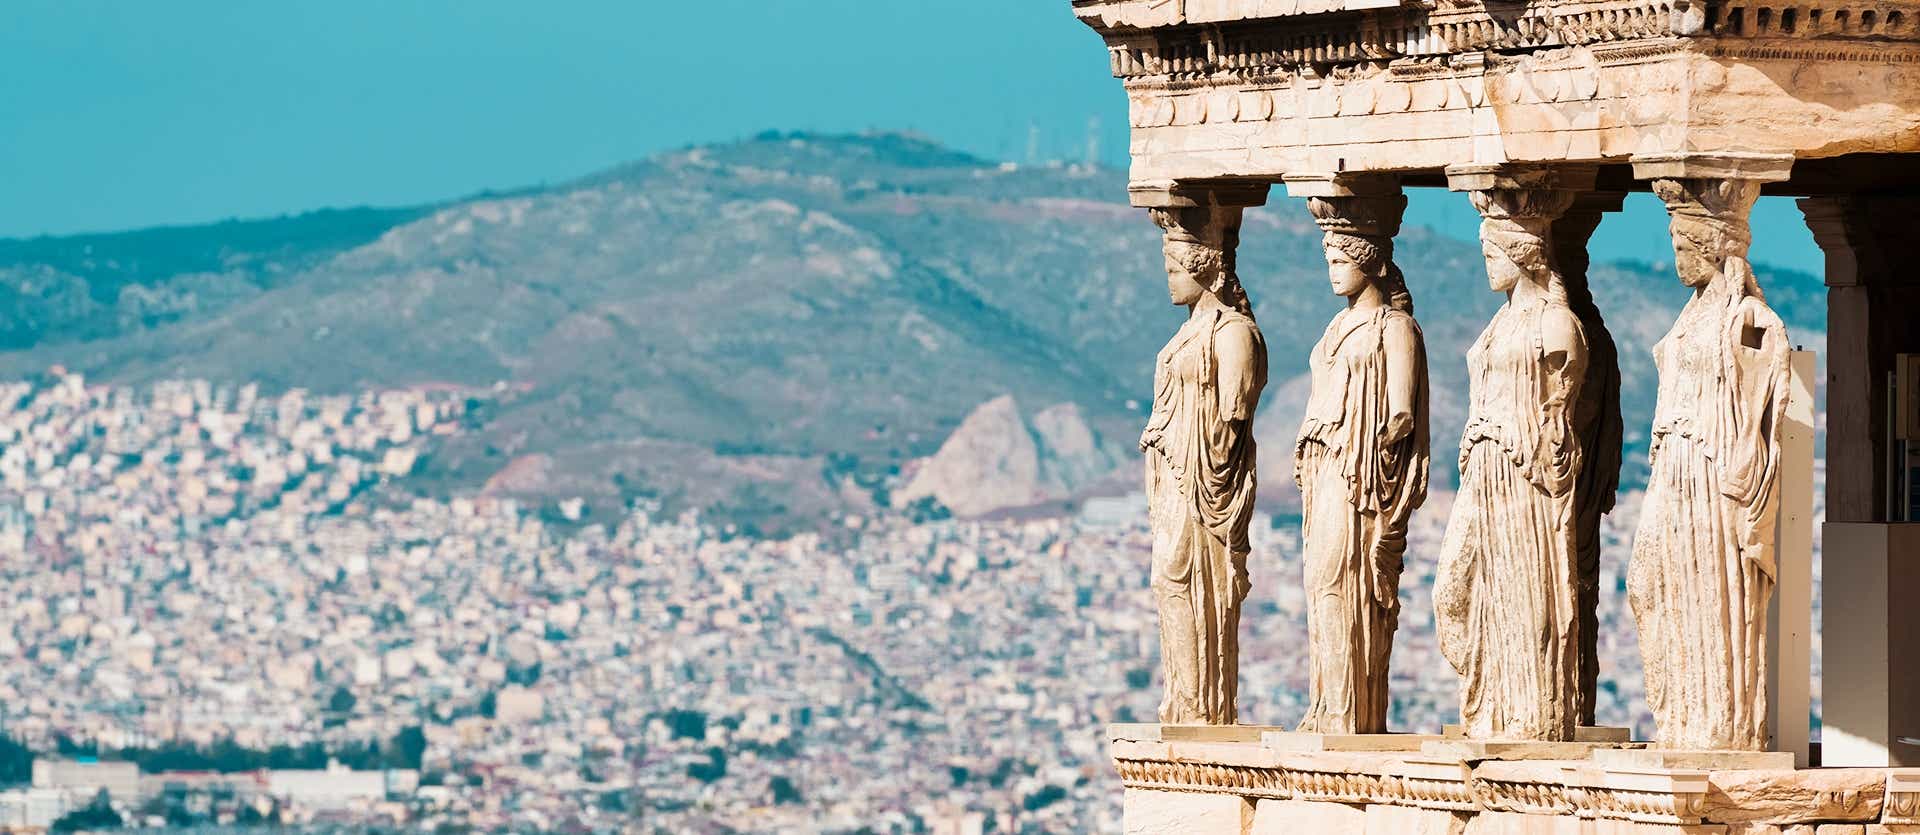 The Caryatids <span class="iconos separador"></span> Athens Acropolis <span class="iconos separador"></span> Greece